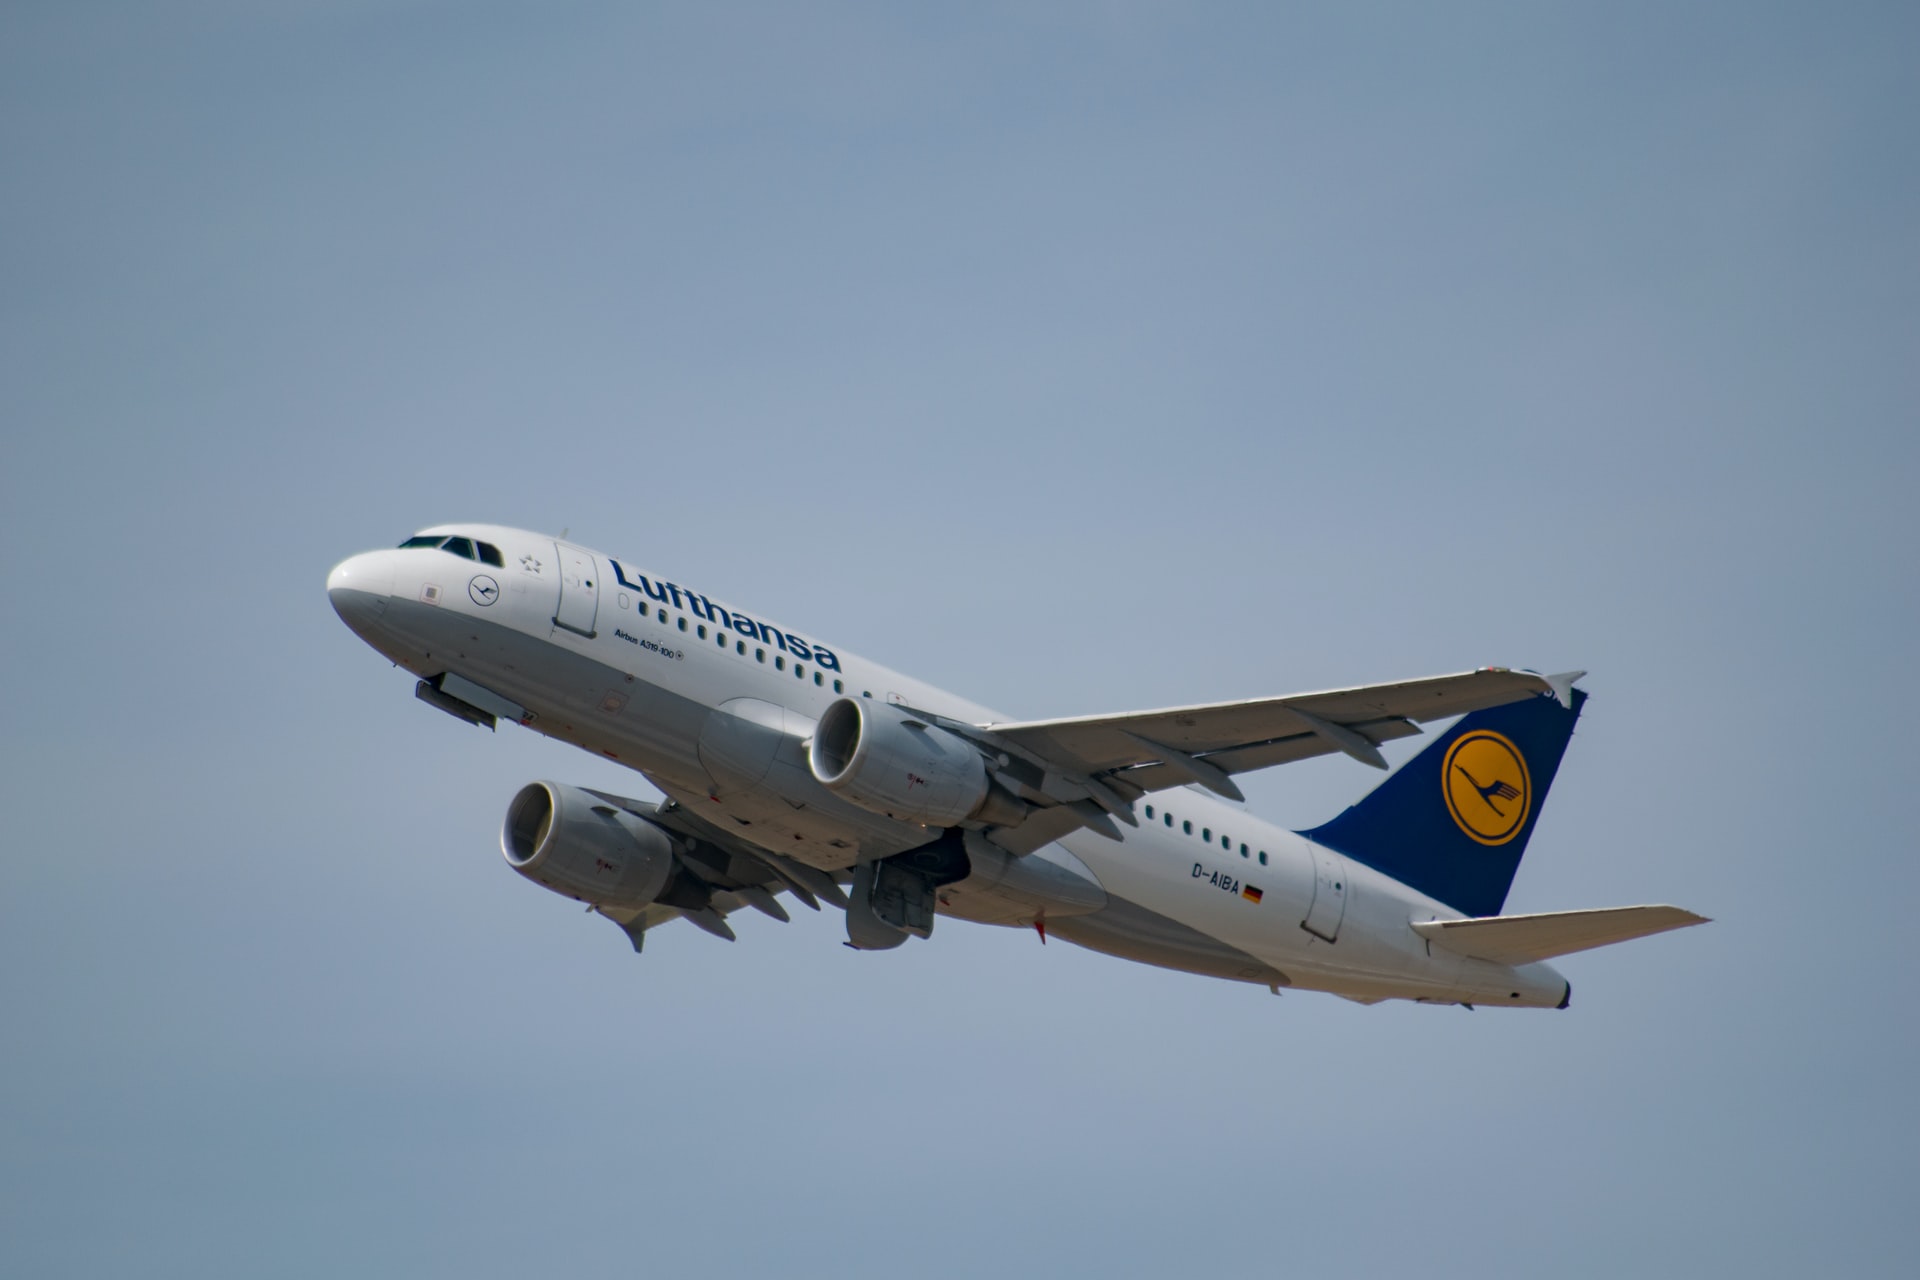 Dorothea von Boxberg, 'Rekordmacherin' van Lufthansa krijgt Brussels Airlines onder haar hoede